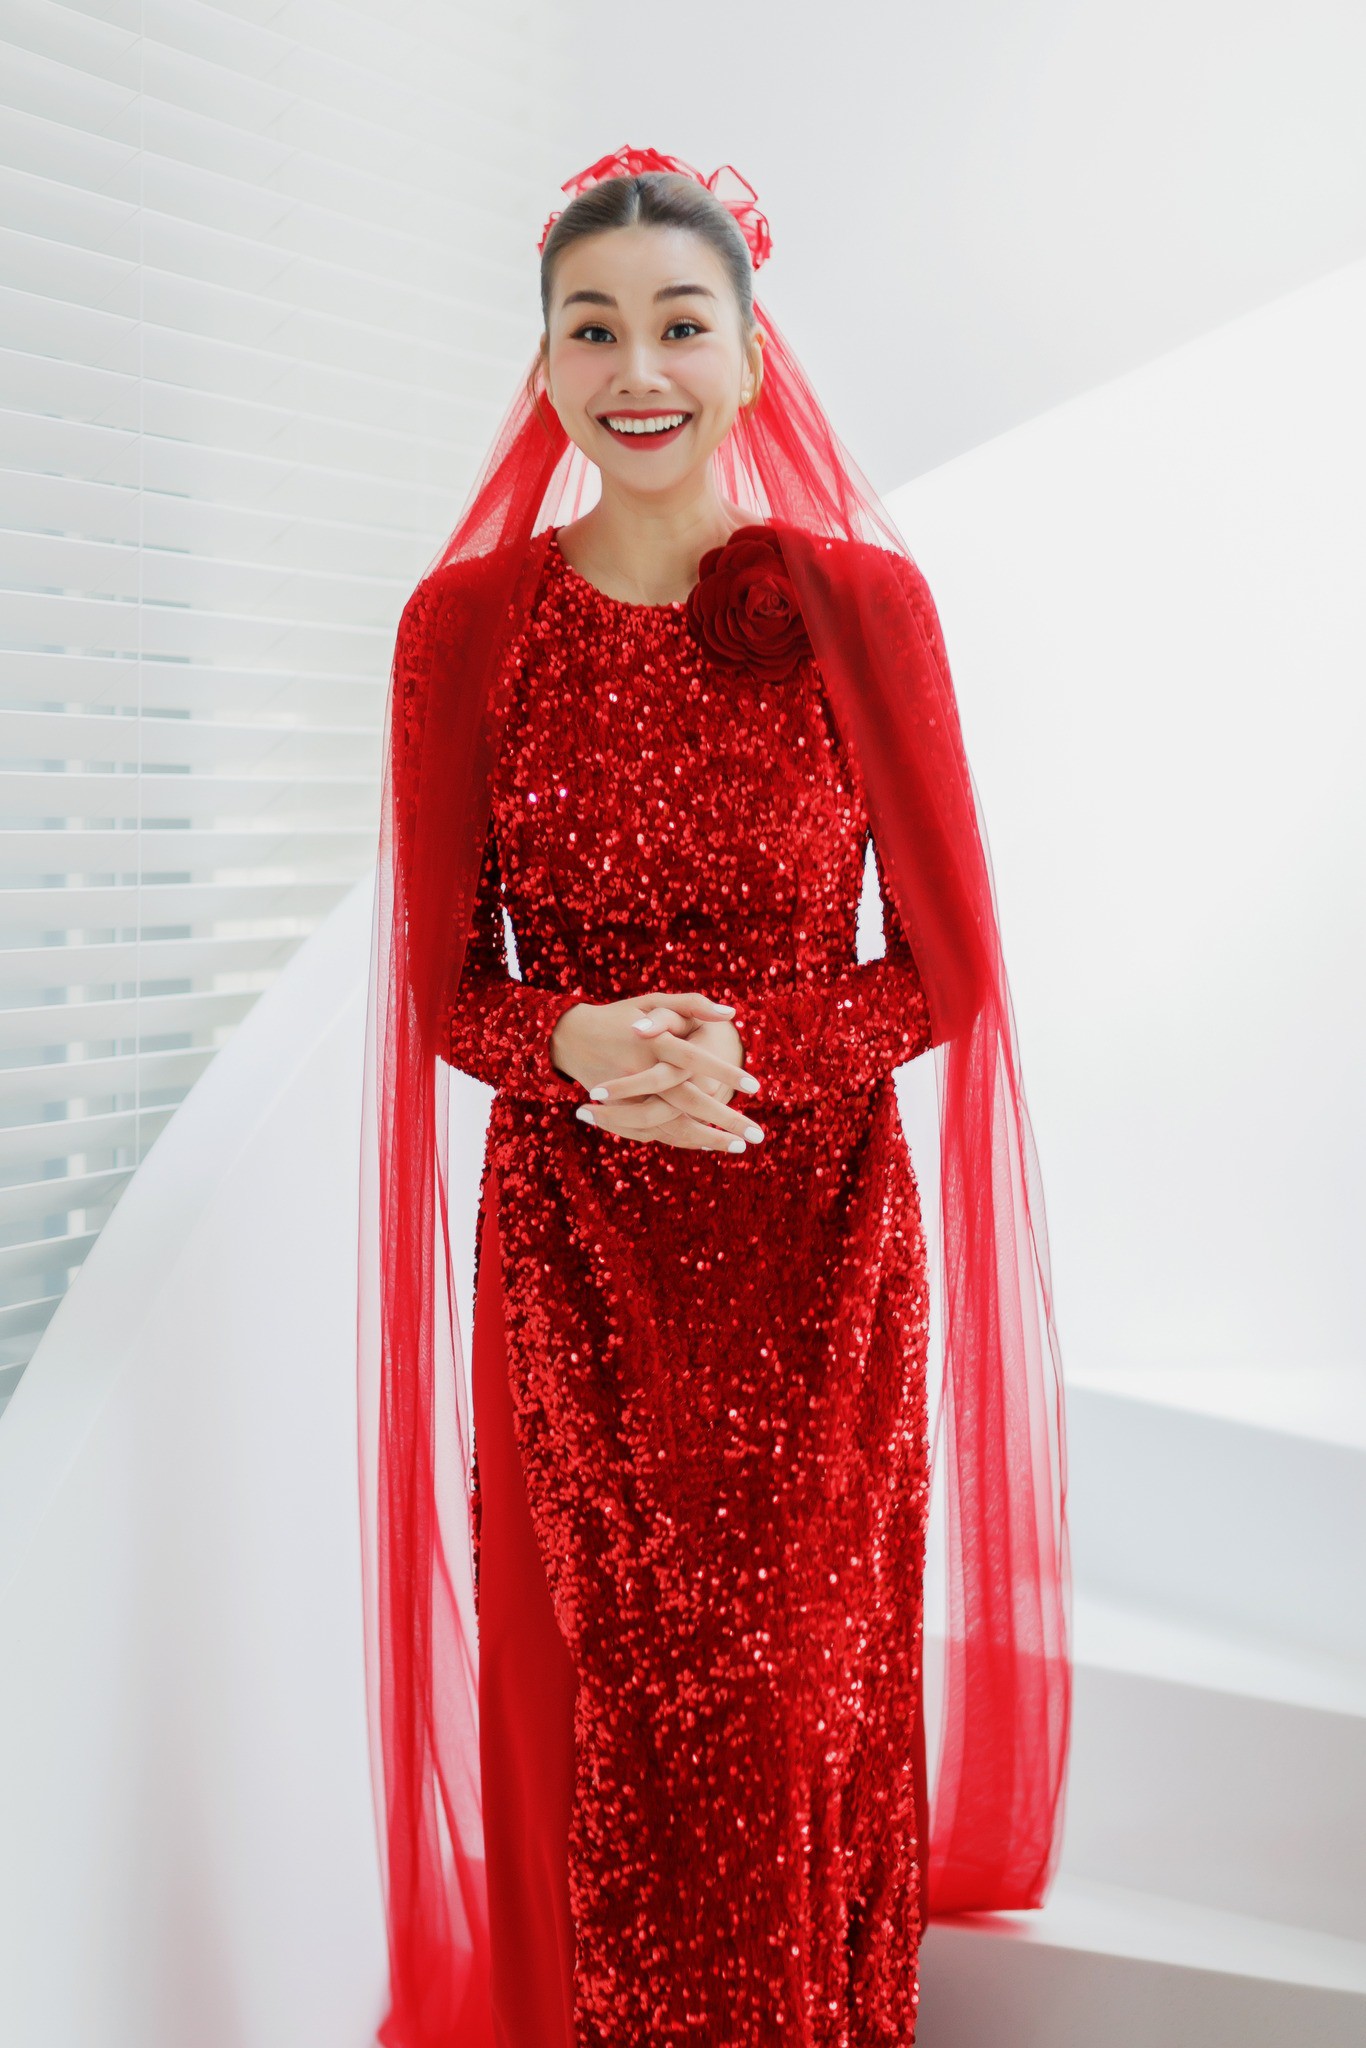 Thanh Hằng nền nã với áo dài đỏ trong ngày cưới, lấy cảm hứng từ chiếc áo của mẹ - 3